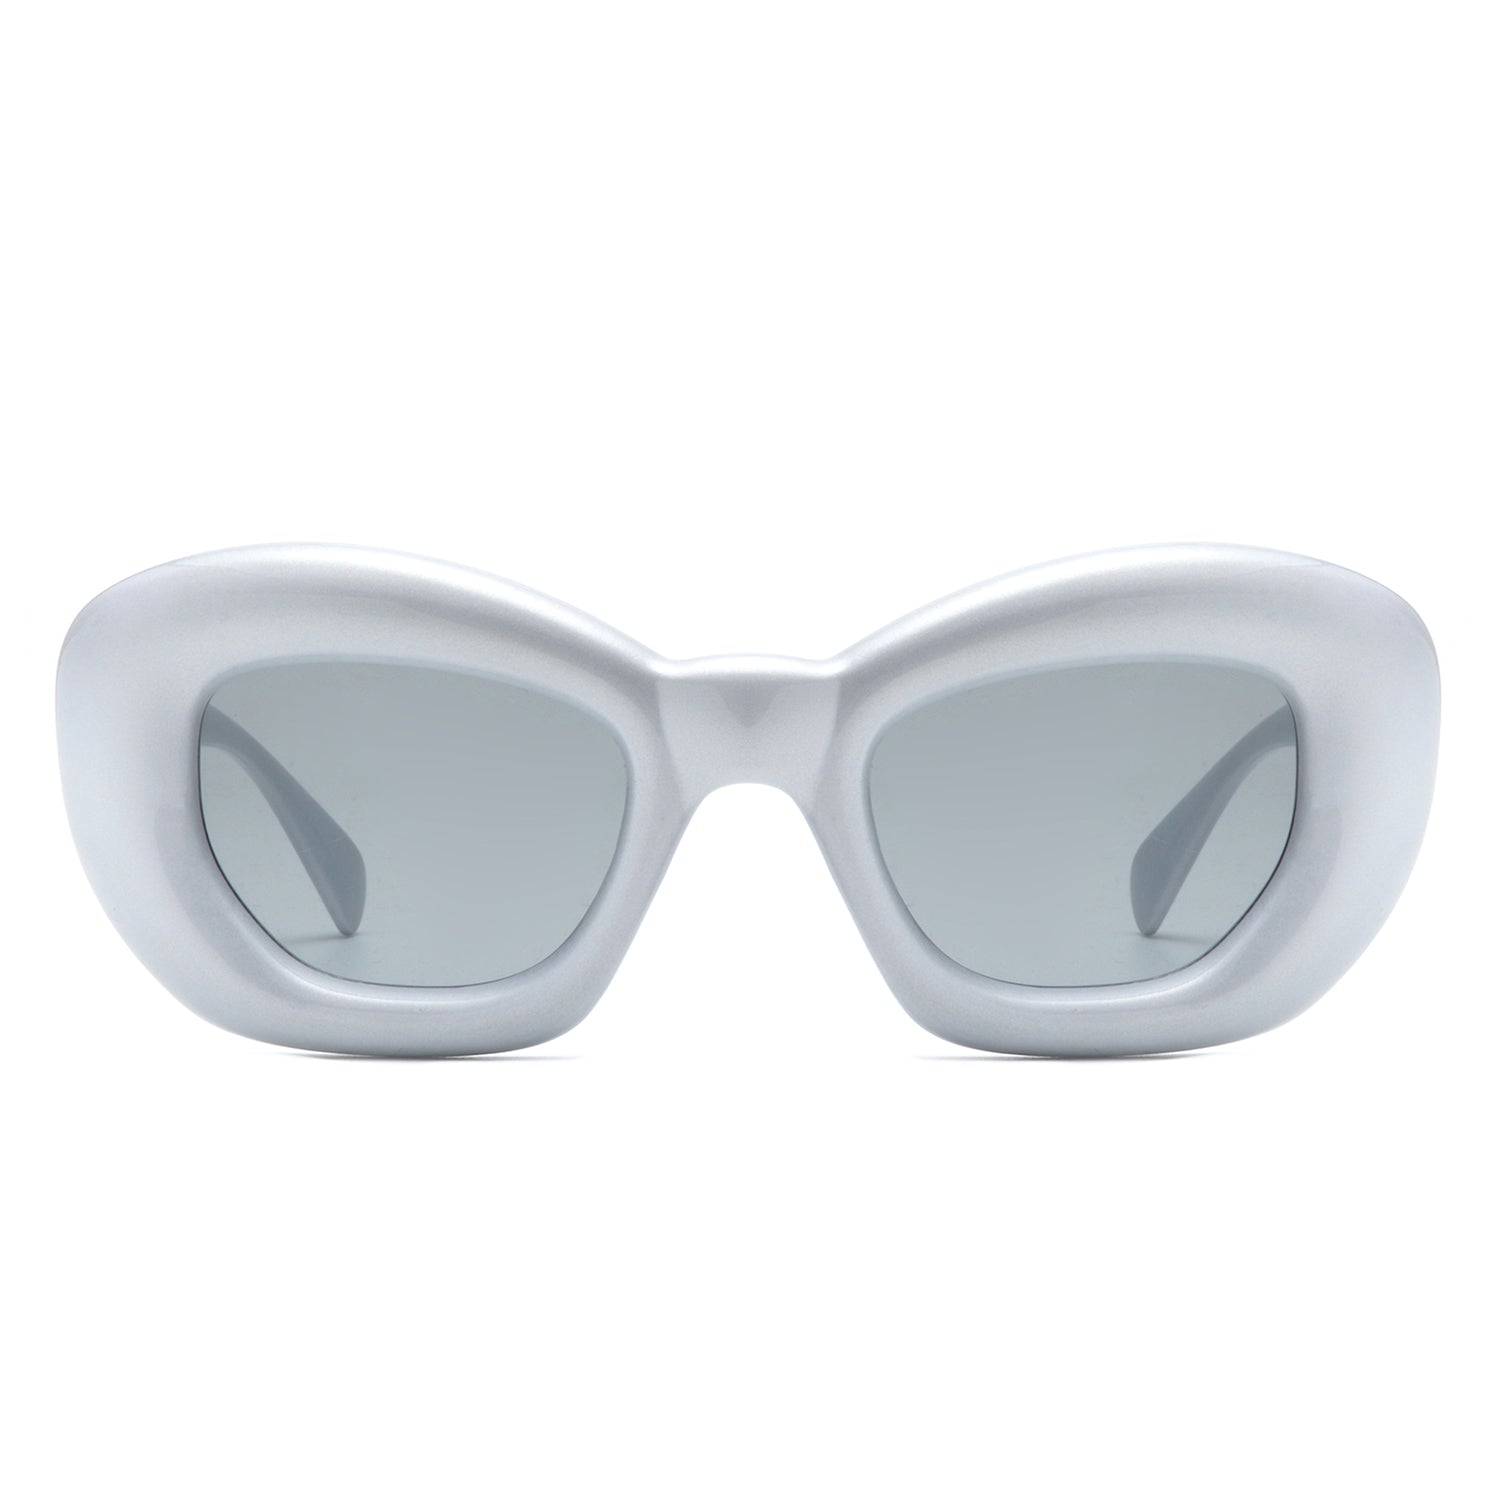 ASOS DESIGN cat eye sunglasses in white | ASOS